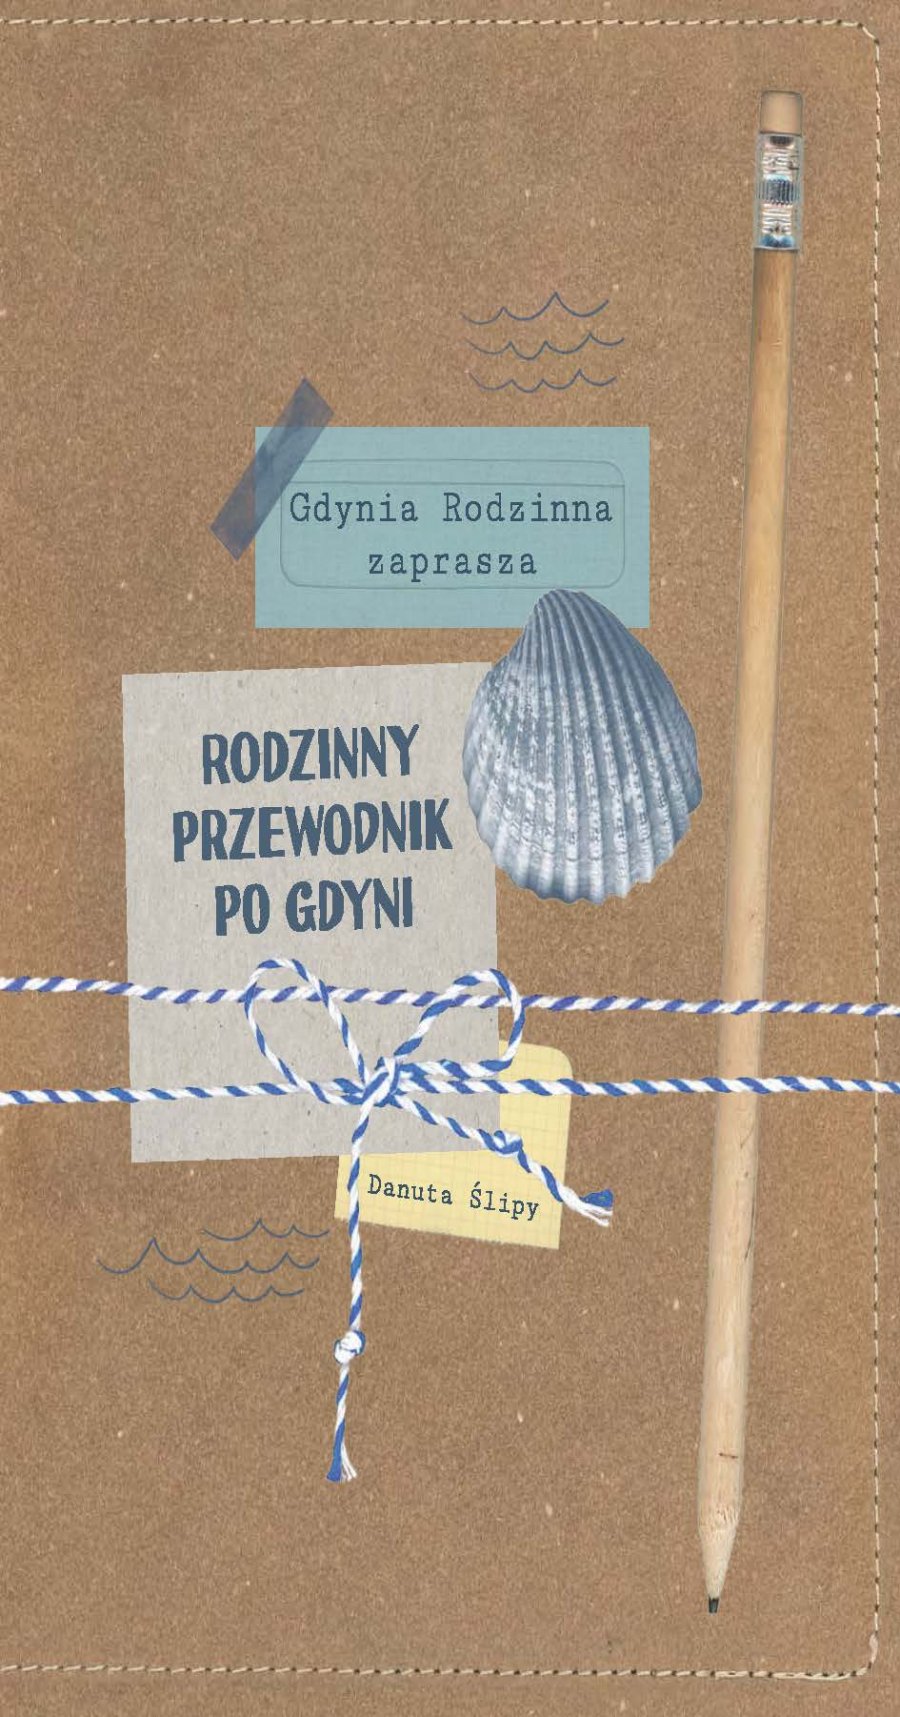 Piaskowego koloru okładka z 3 naklejkami: "Gdynia Rodzinna zaprasza", "Rodzinny przewodnik po Gdyni" oraz "Danuta Ślipy", która jest autorką. Na niej leży drewniany ołówek, całość przewiązana biało-niebieskim sznurkiem